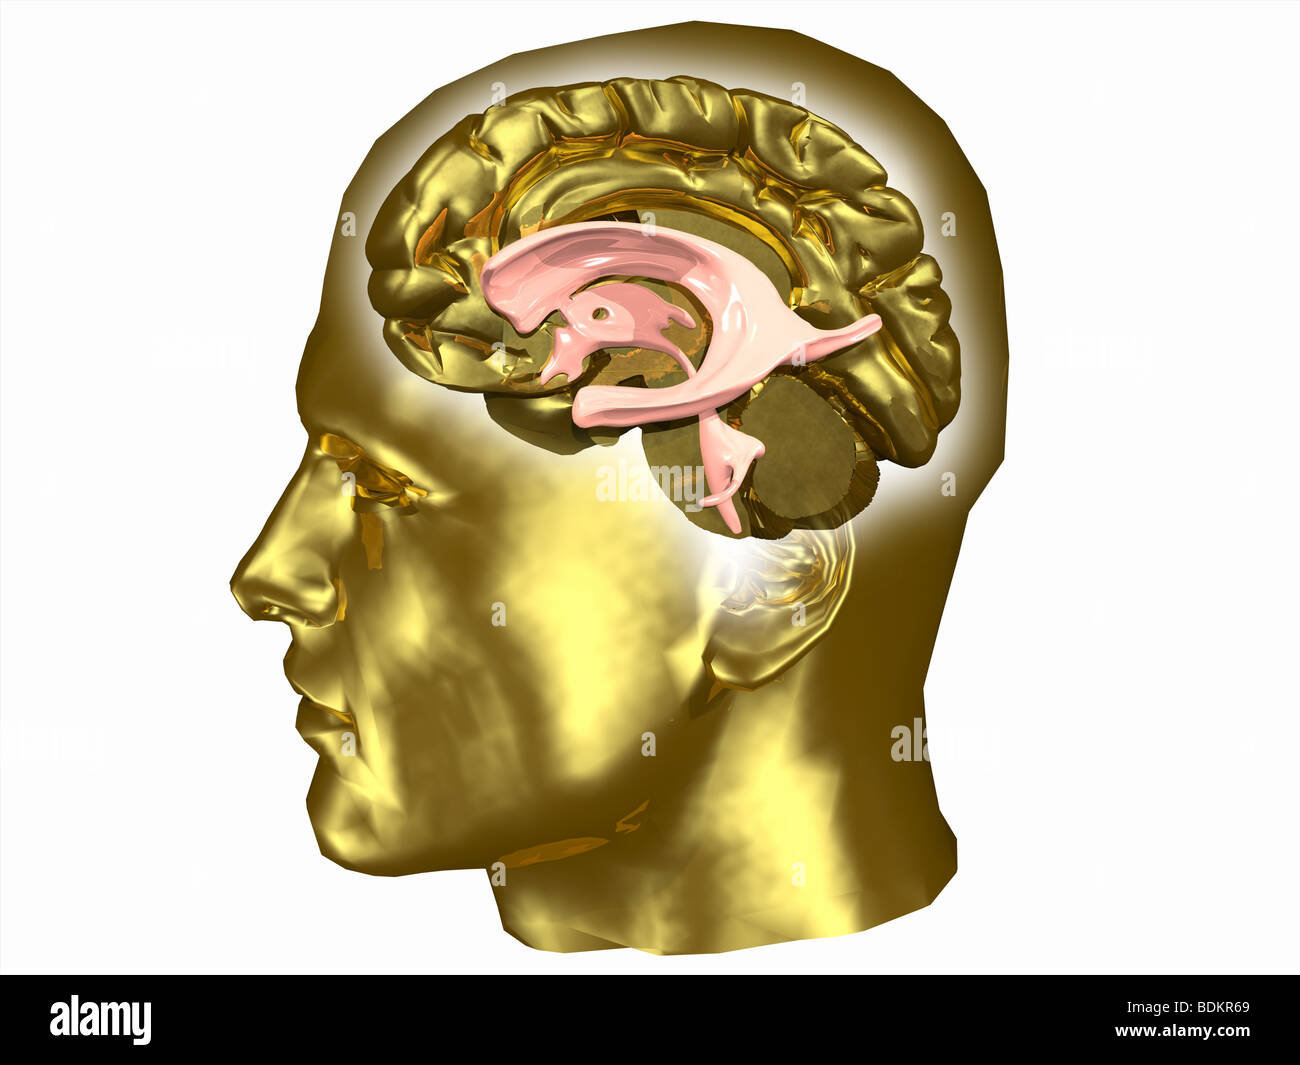 Cerveau et système ventriculaire dans une tête humaine Banque D'Images